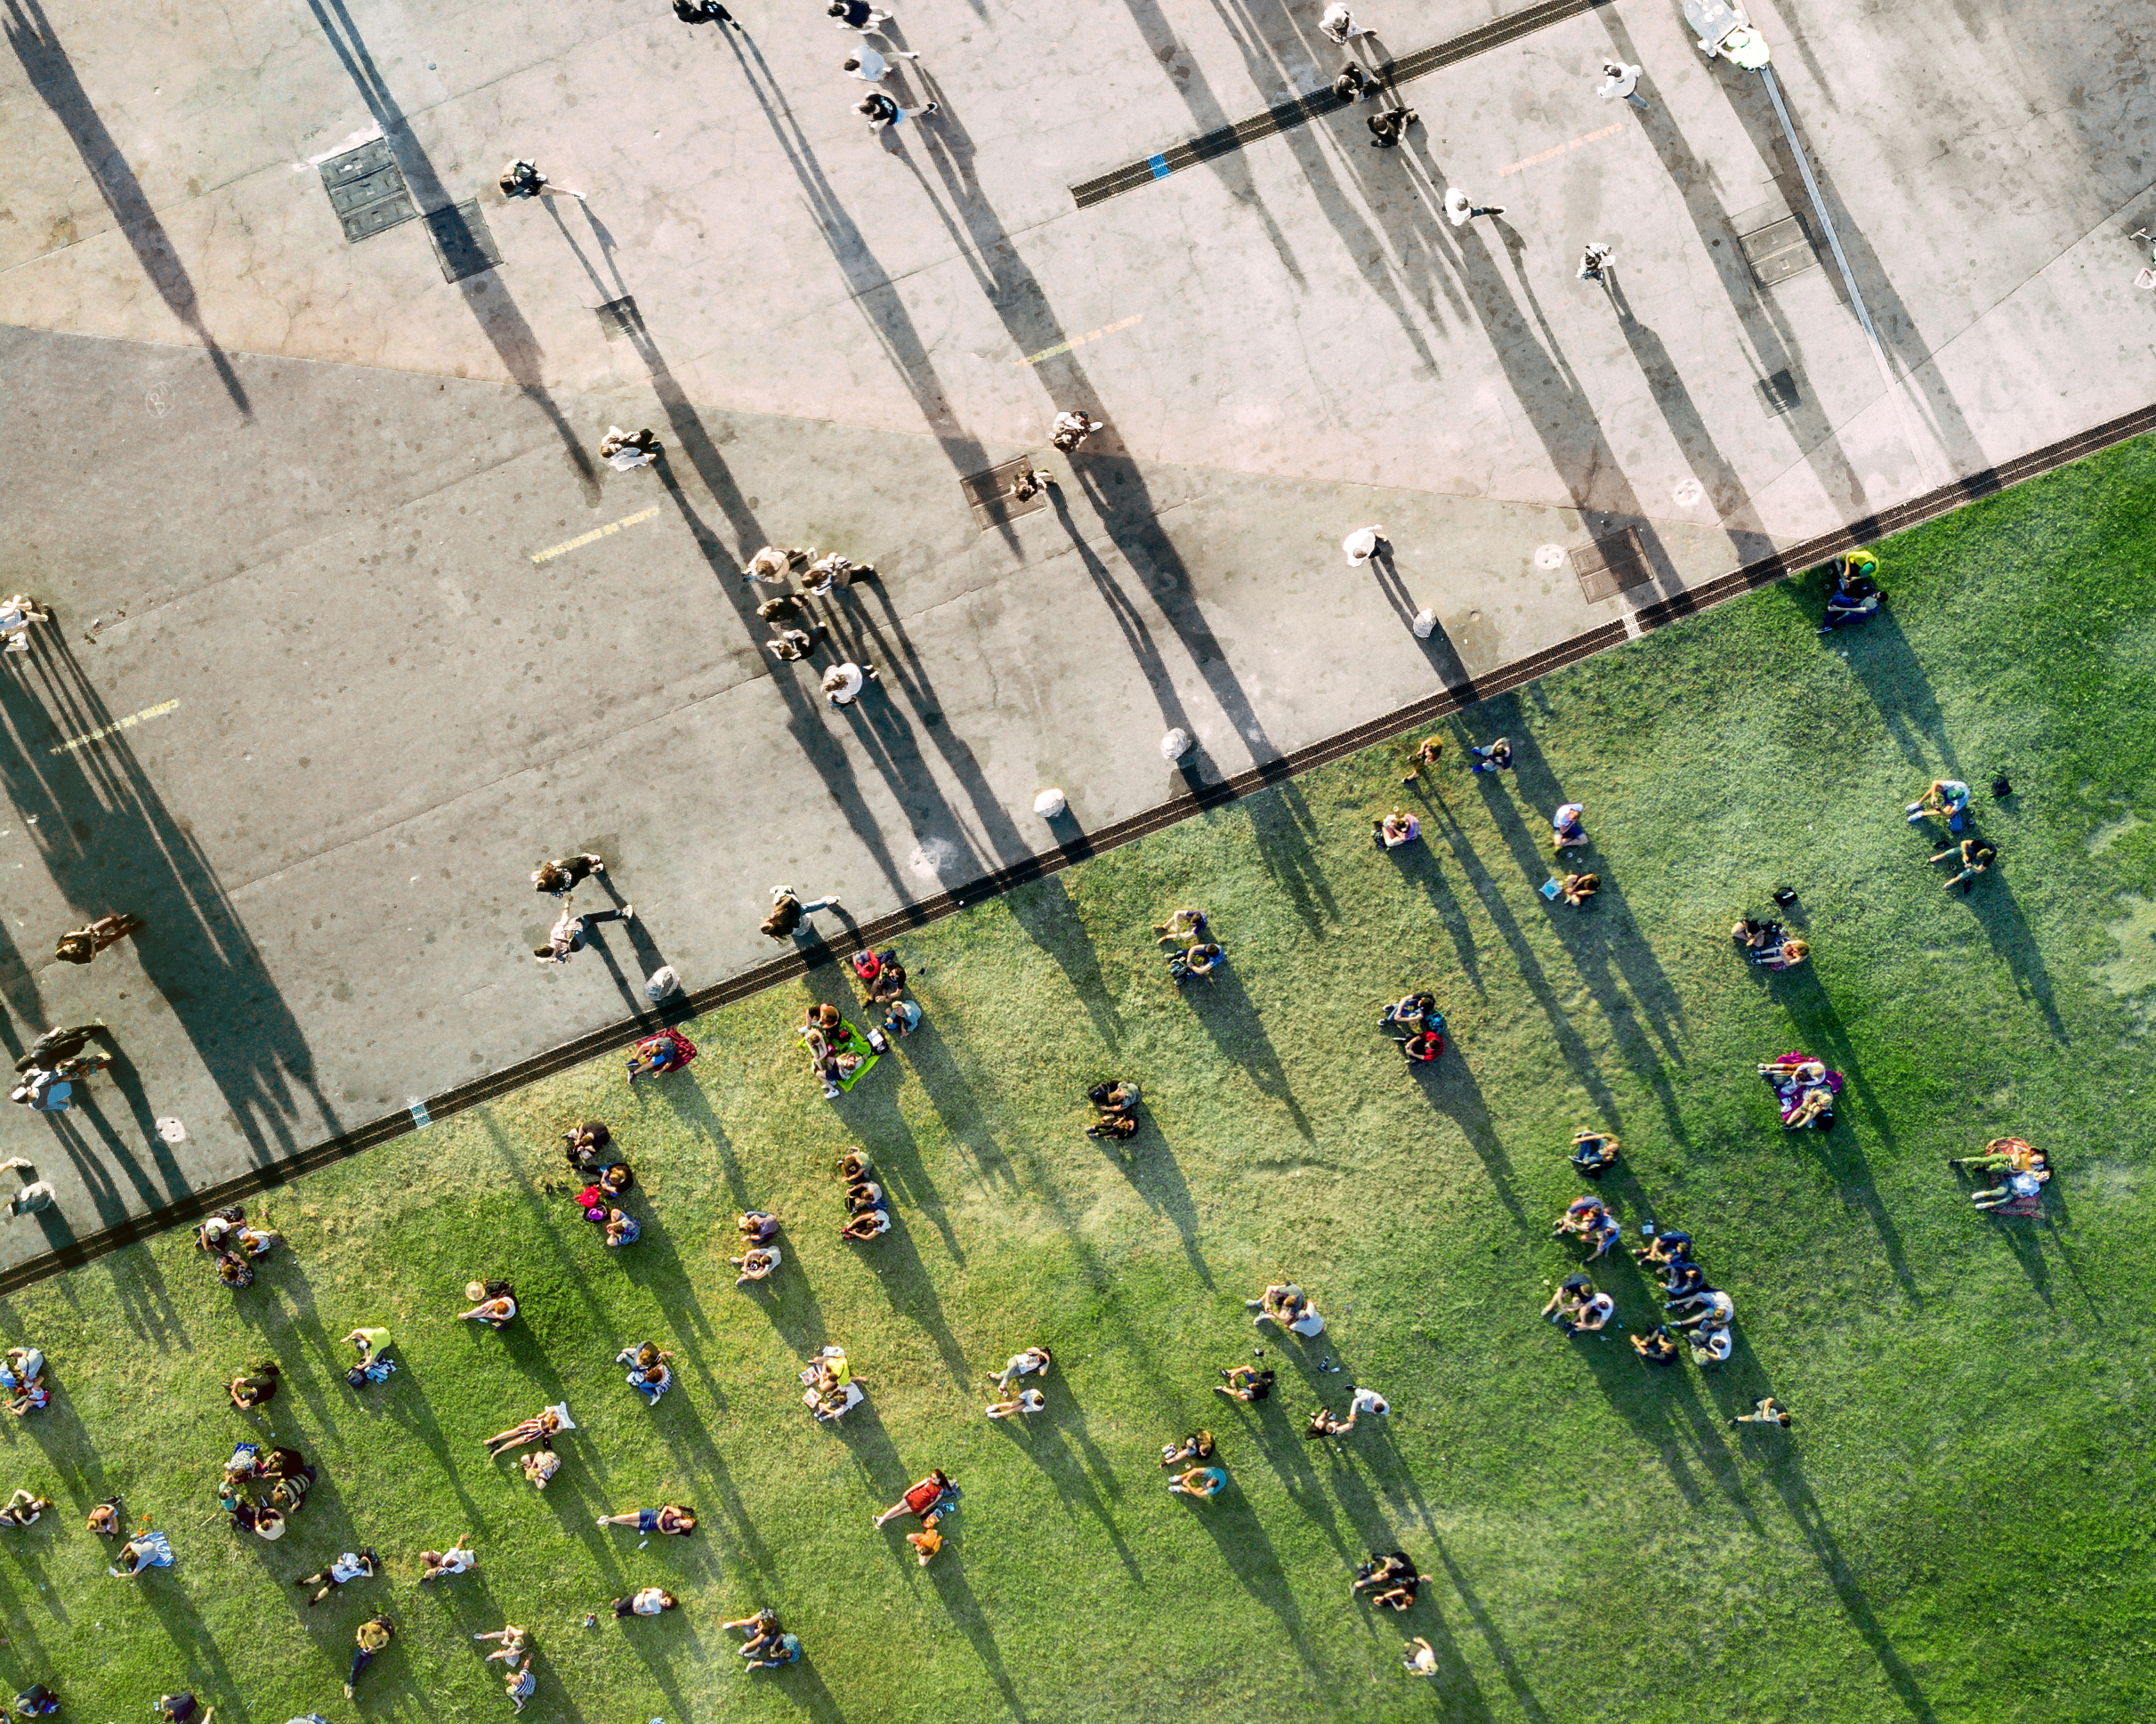 Luchtfoto van mensen die op een grasveld bij elkaar zitten en over straat lopen